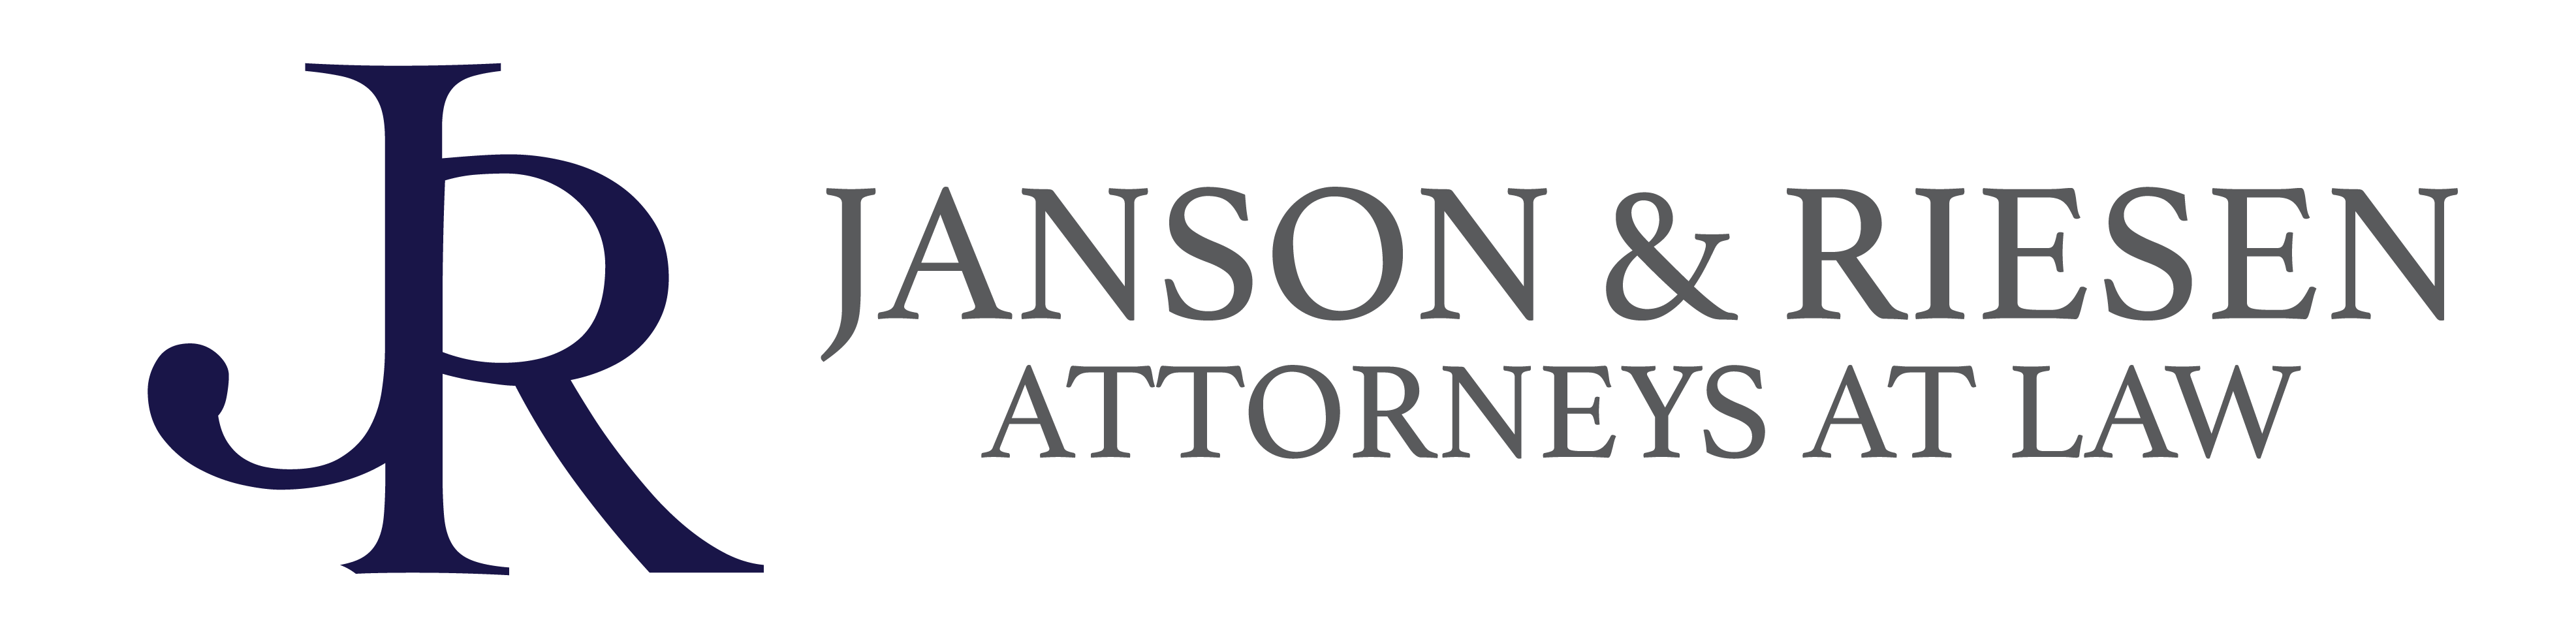 Janson & Riesen Attorneys at Law